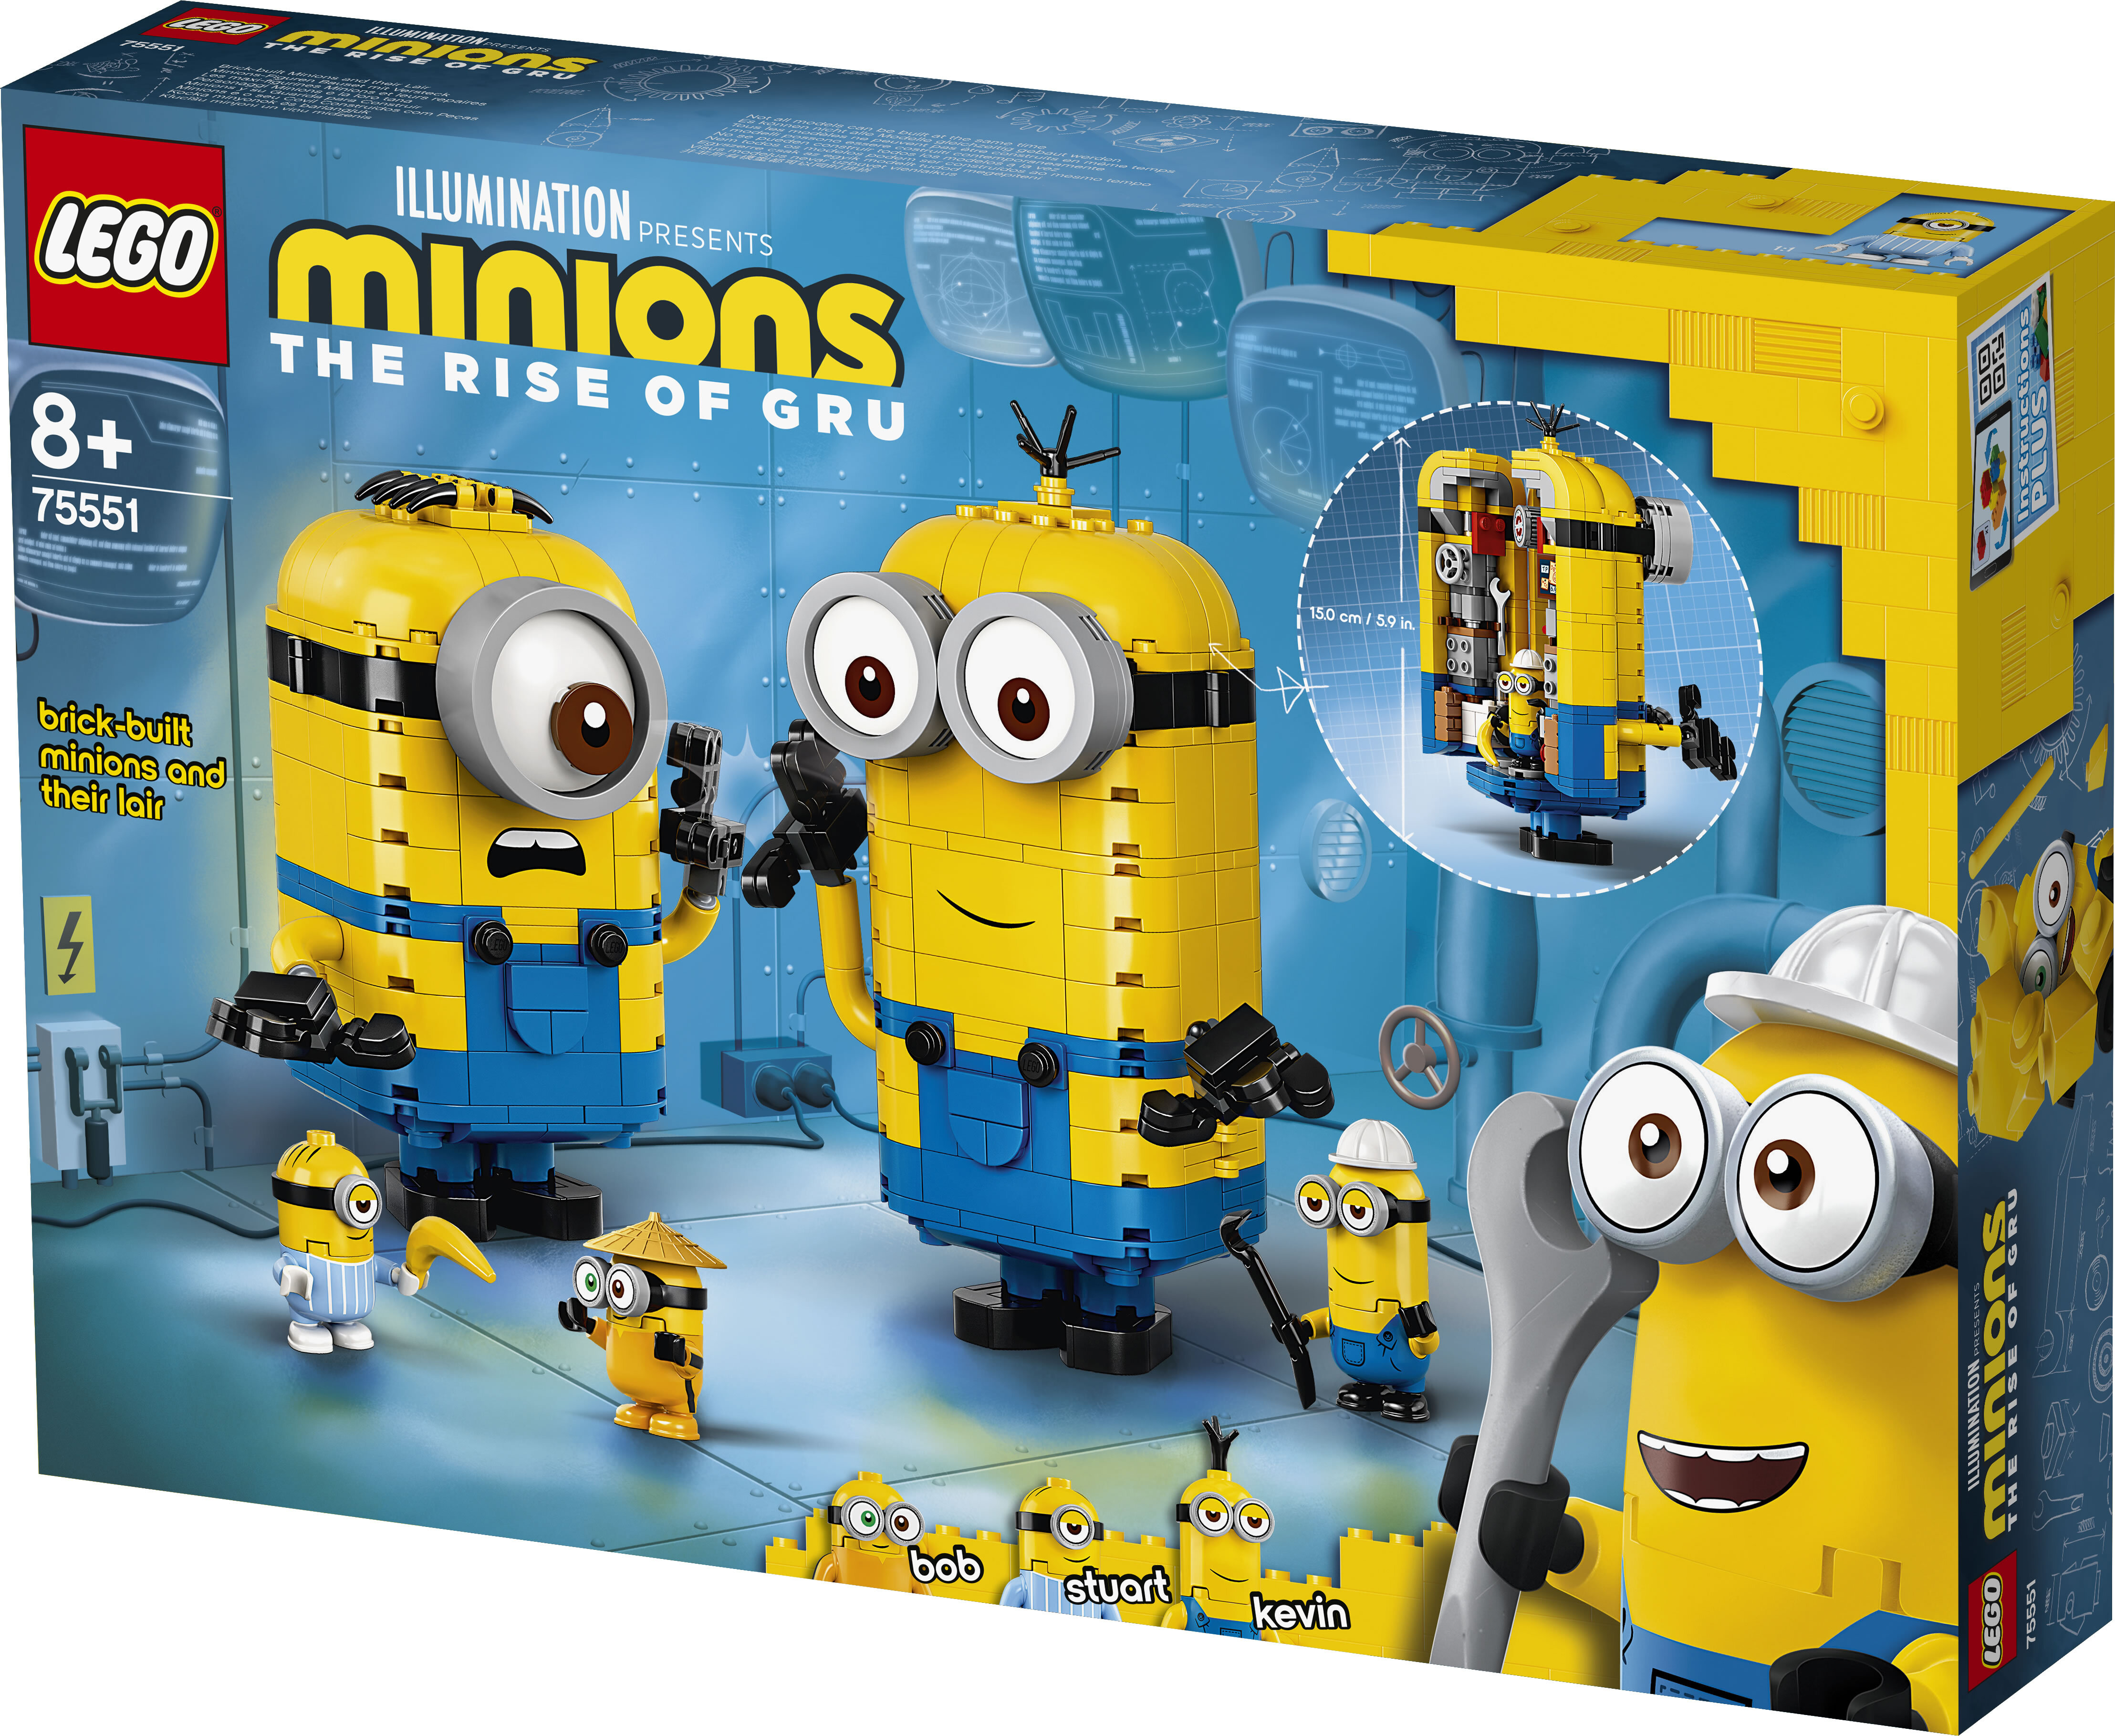 Lego 75551 Minions Minions-Figuren Bauset mit Versteck, Spielzeug für Kinder ab 8 Jahre mit Figuren: Stuart, Kevin & Bob